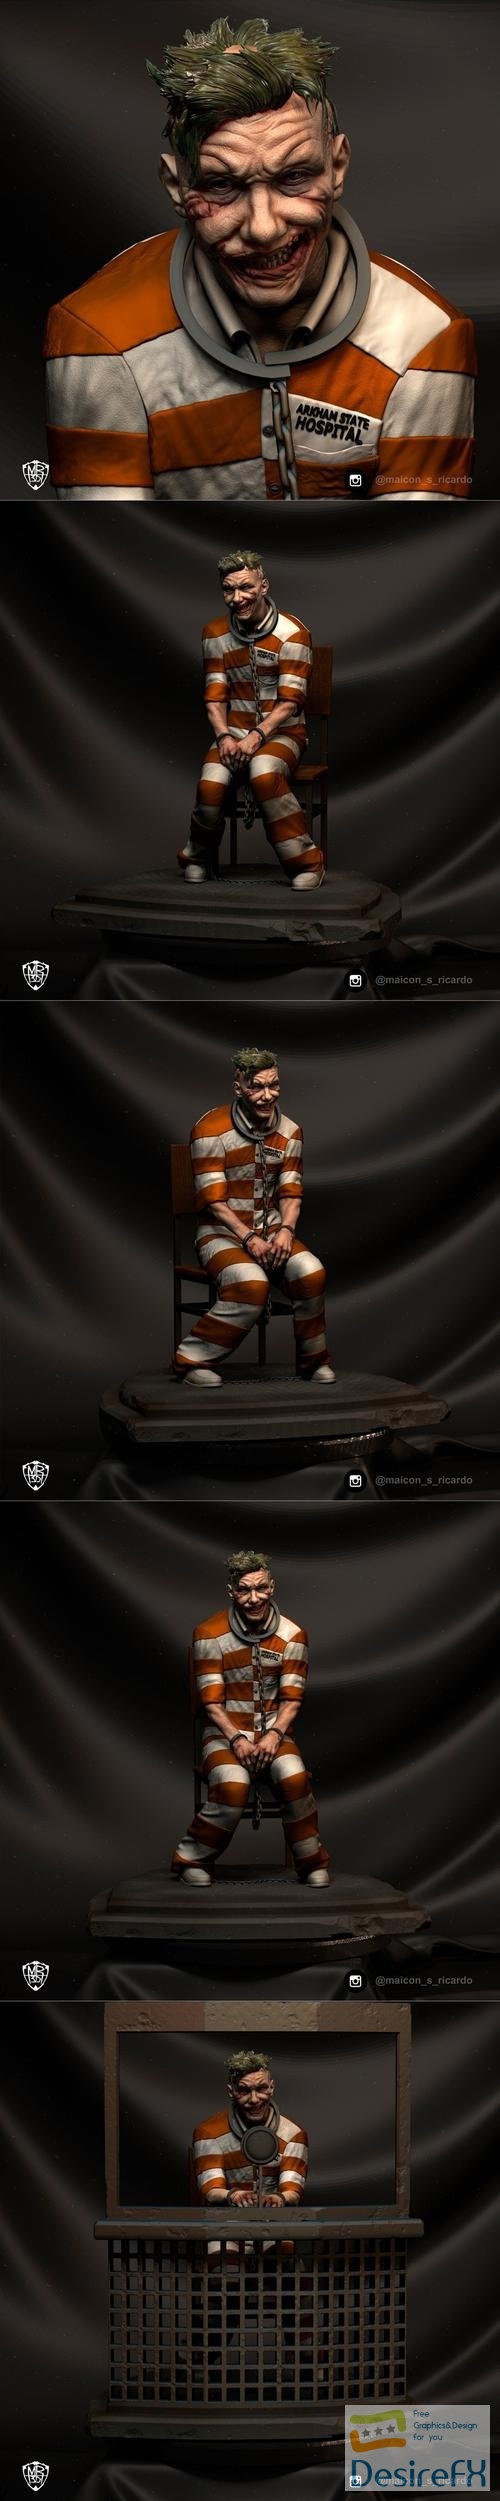 Joker Barry Keoghan fan art – 3D Print